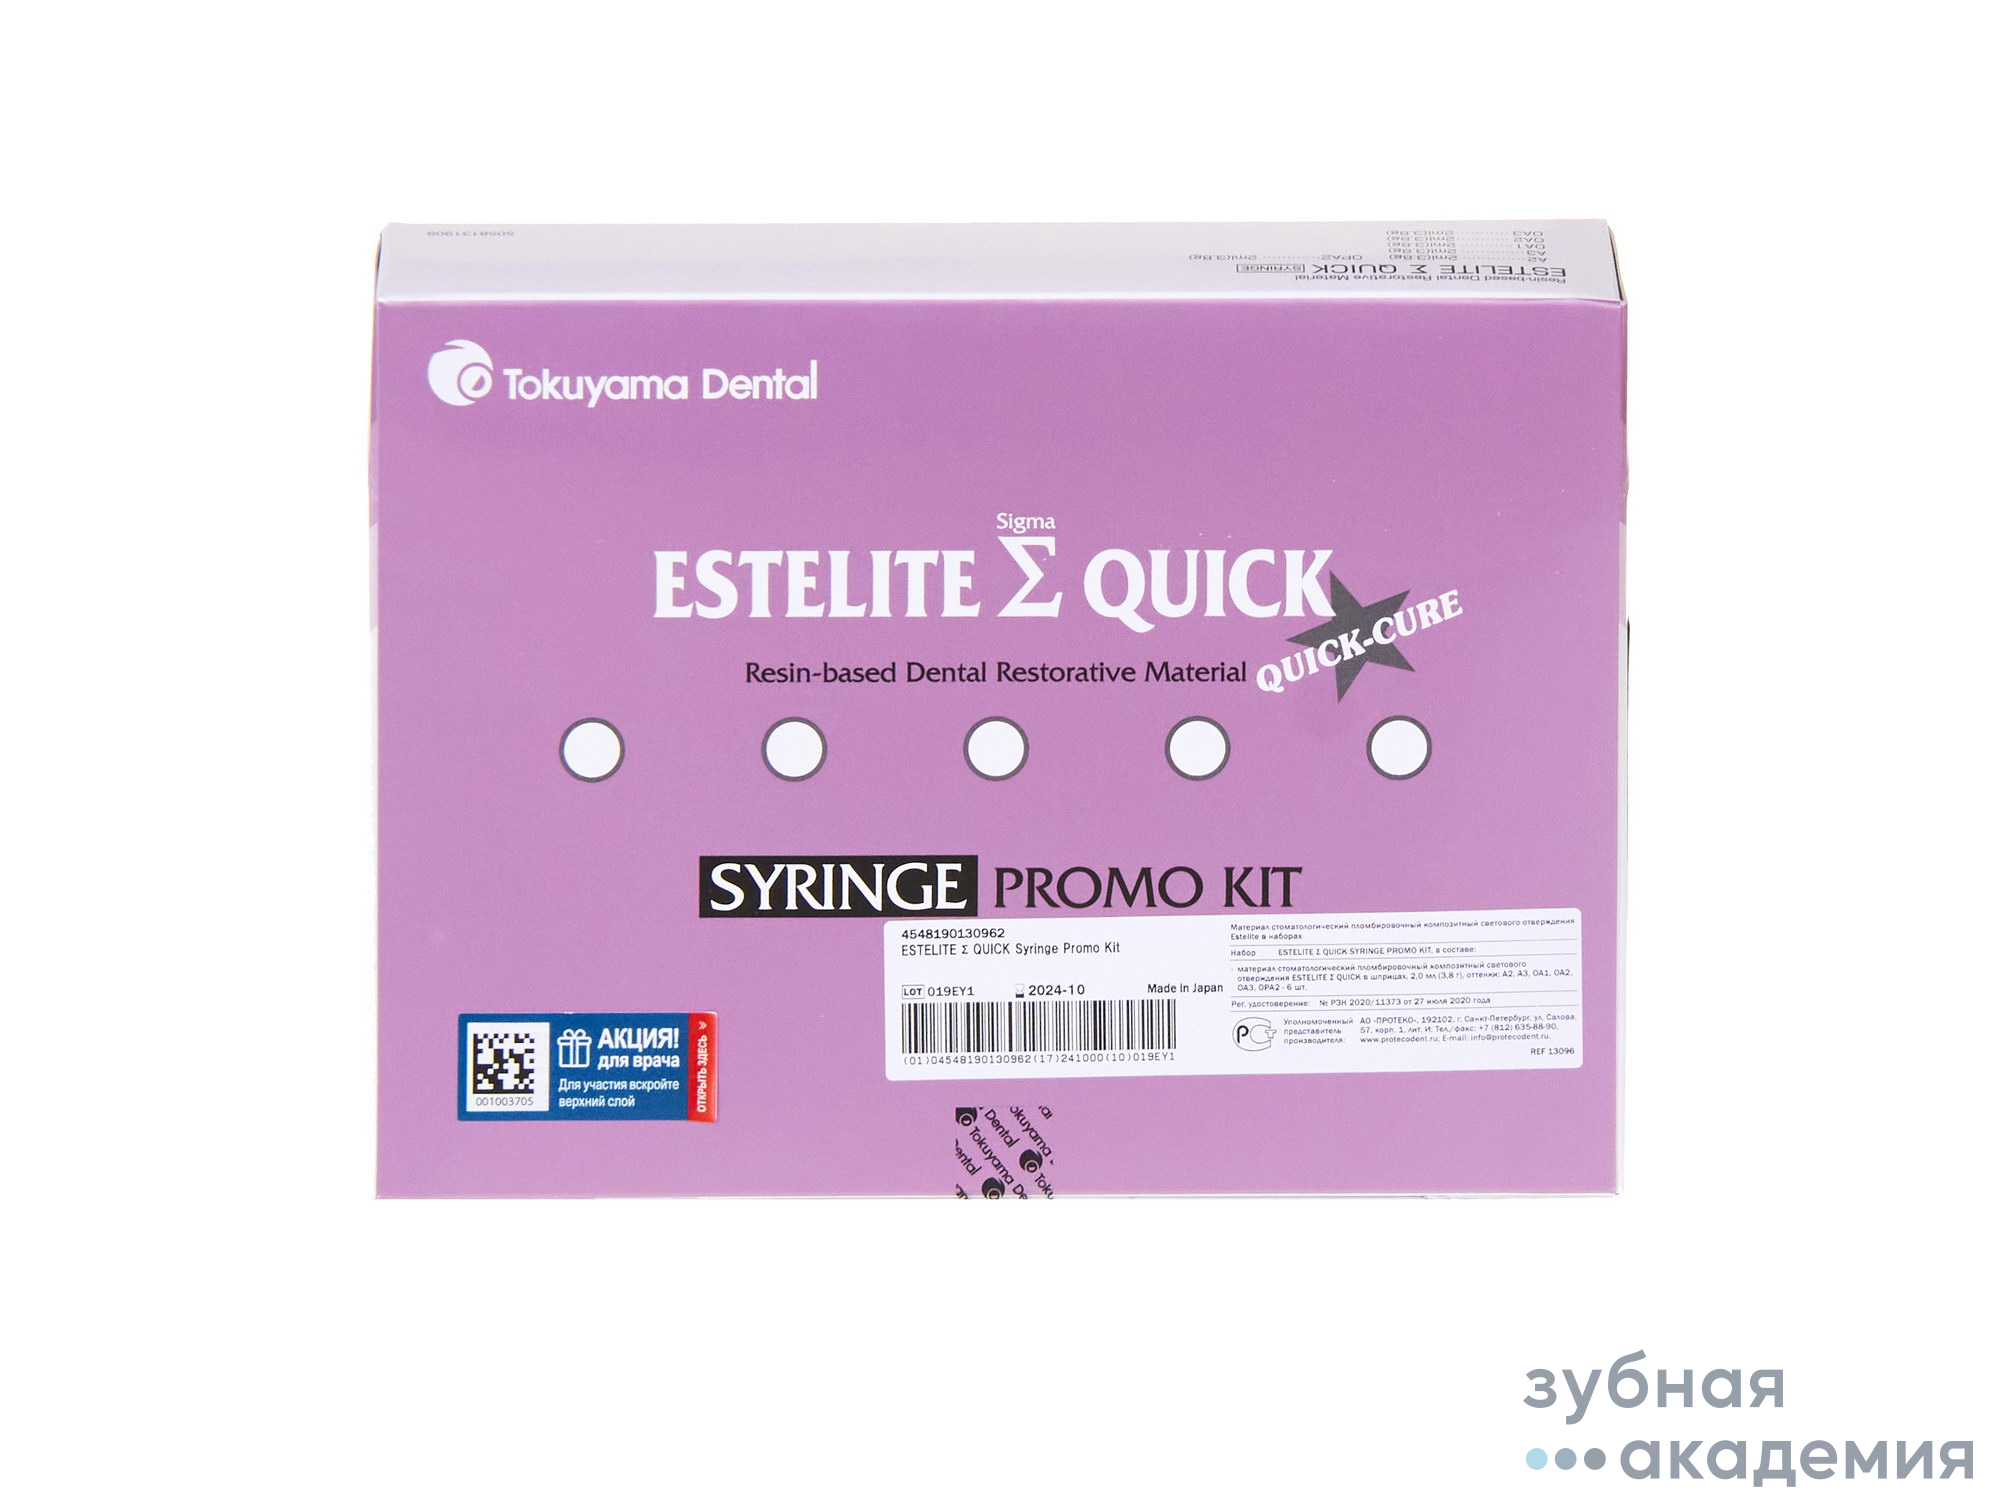 Estelite Sigma Quick / Эстелайт Сигма Квик набор 6 шприцов (6 х 3,8 г) Tokuyama Dental/ Япония